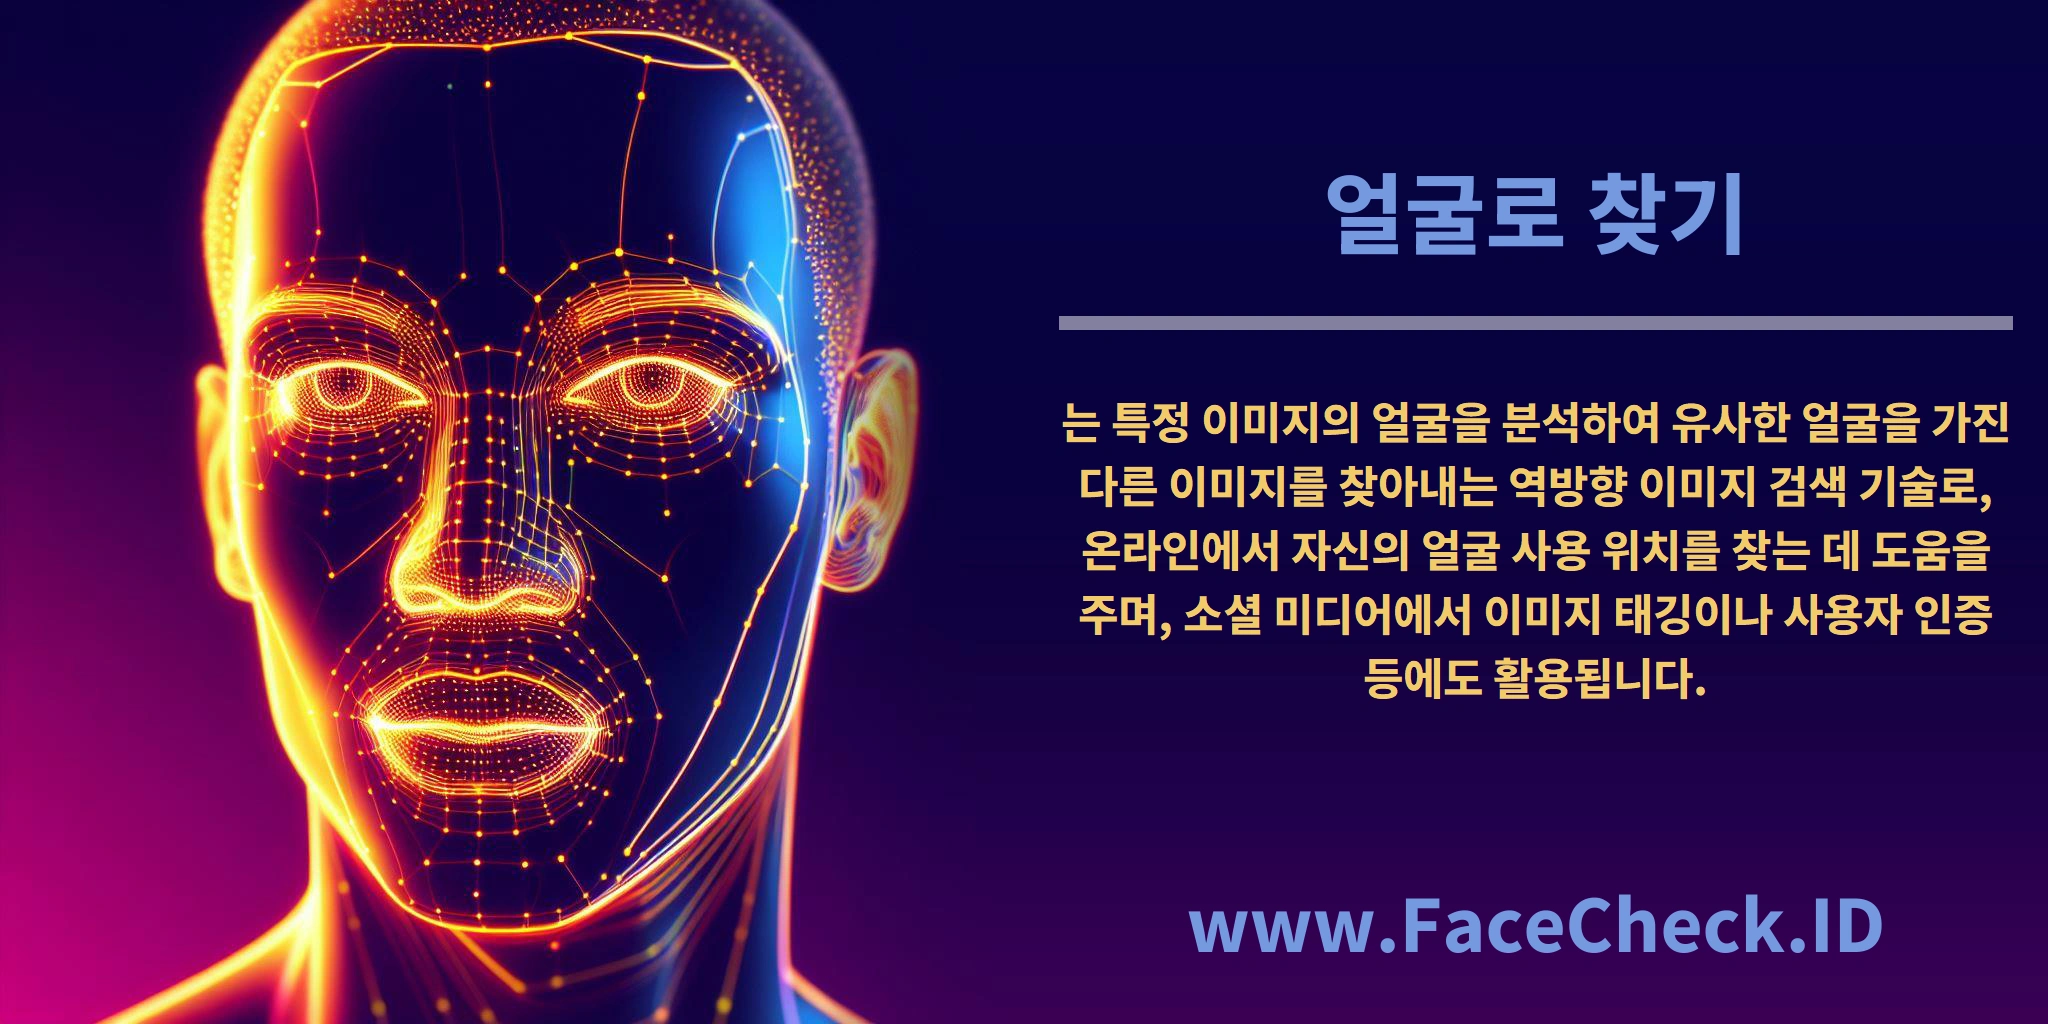 <b>얼굴로 찾기</b>는 특정 이미지의 얼굴을 분석하여 유사한 얼굴을 가진 다른 이미지를 찾아내는 역방향 이미지 검색 기술로, 온라인에서 자신의 얼굴 사용 위치를 찾는 데 도움을 주며, 소셜 미디어에서 이미지 태깅이나 사용자 인증 등에도 활용됩니다.